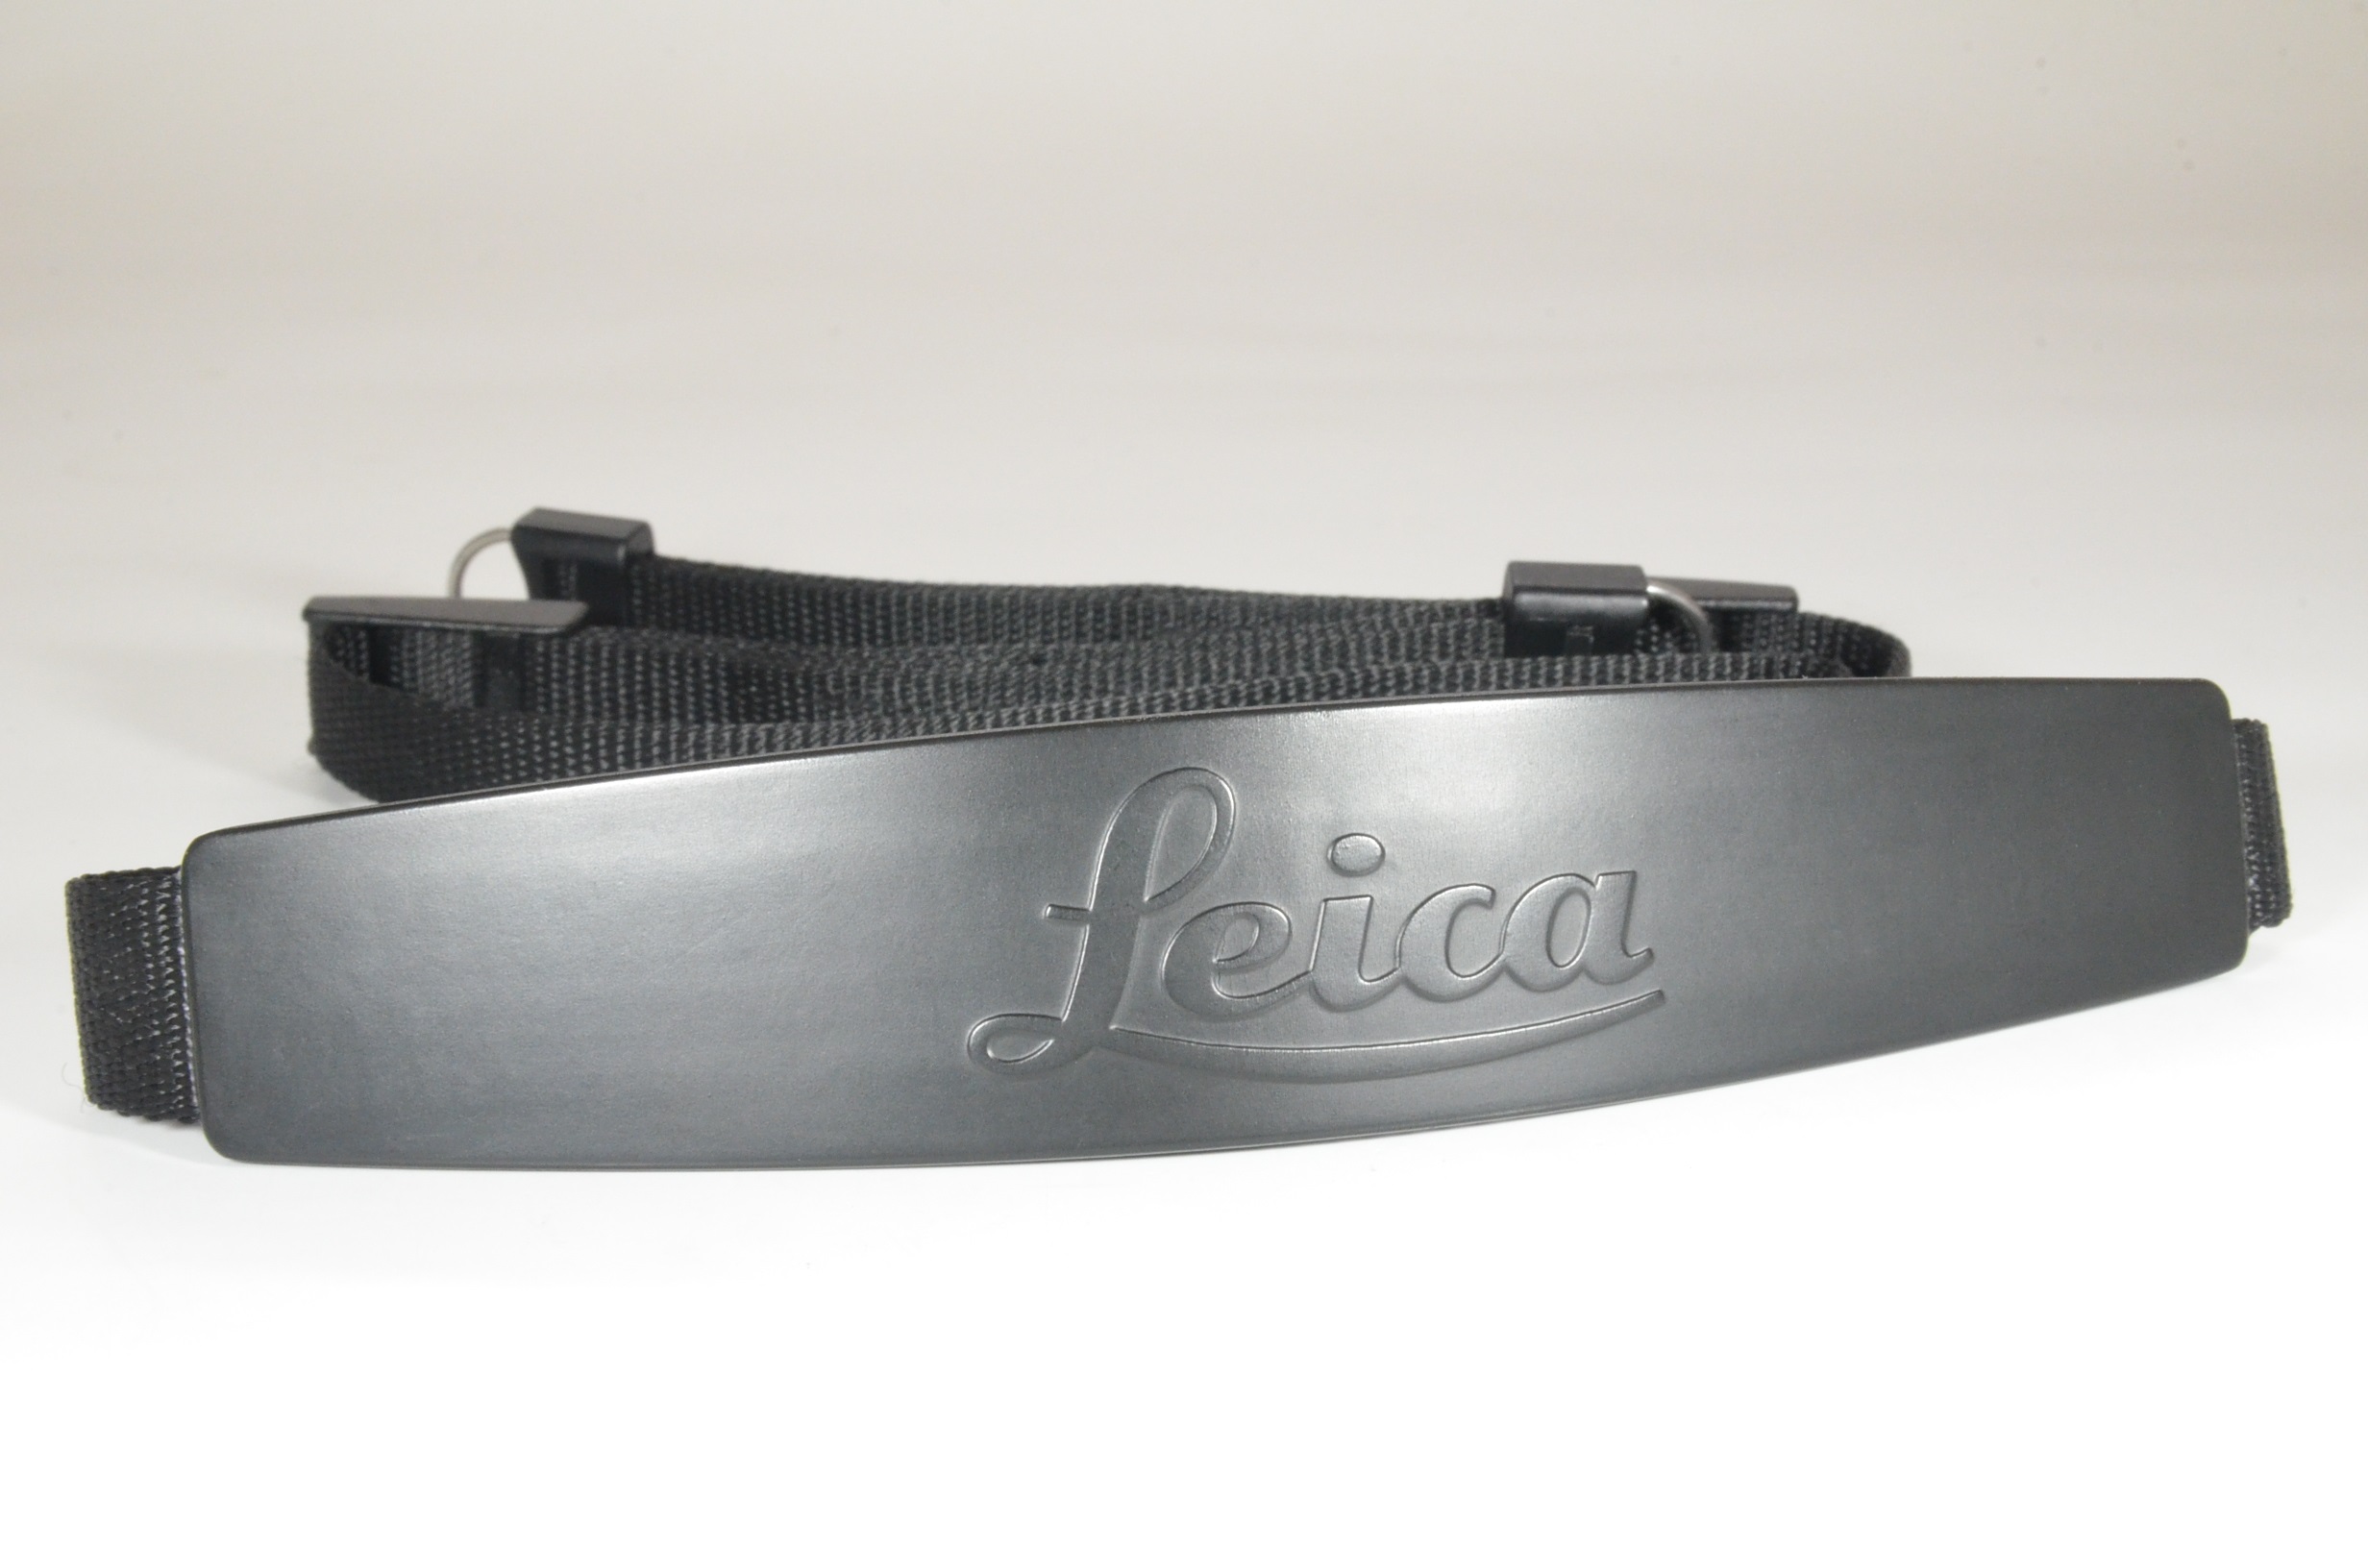 leica original camera strap for m6, m4, m3, m2